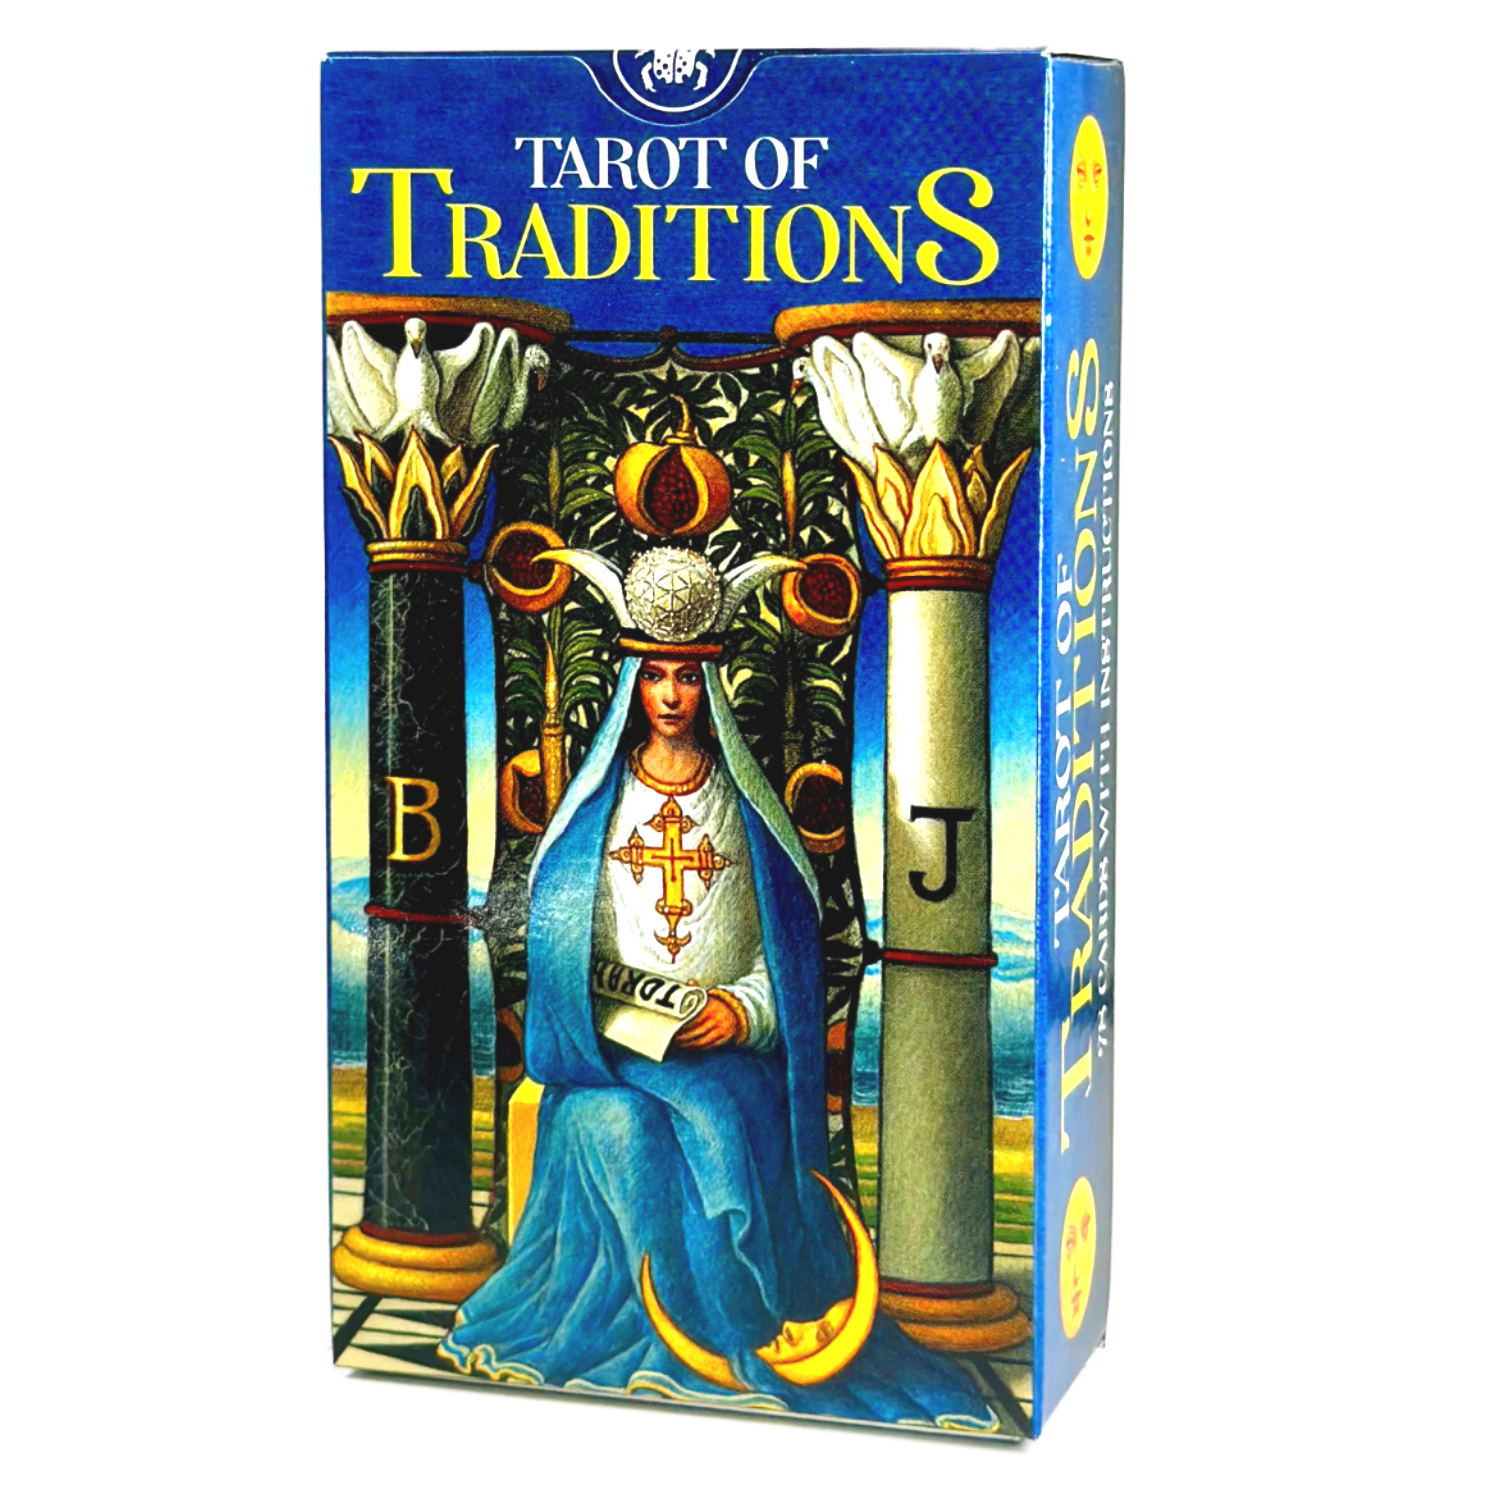 タロットカード ウェイト版 78枚 タロット占い タロット・オブ・トラディションズ Tarot of Traditions 日本語解説書付き 正規品